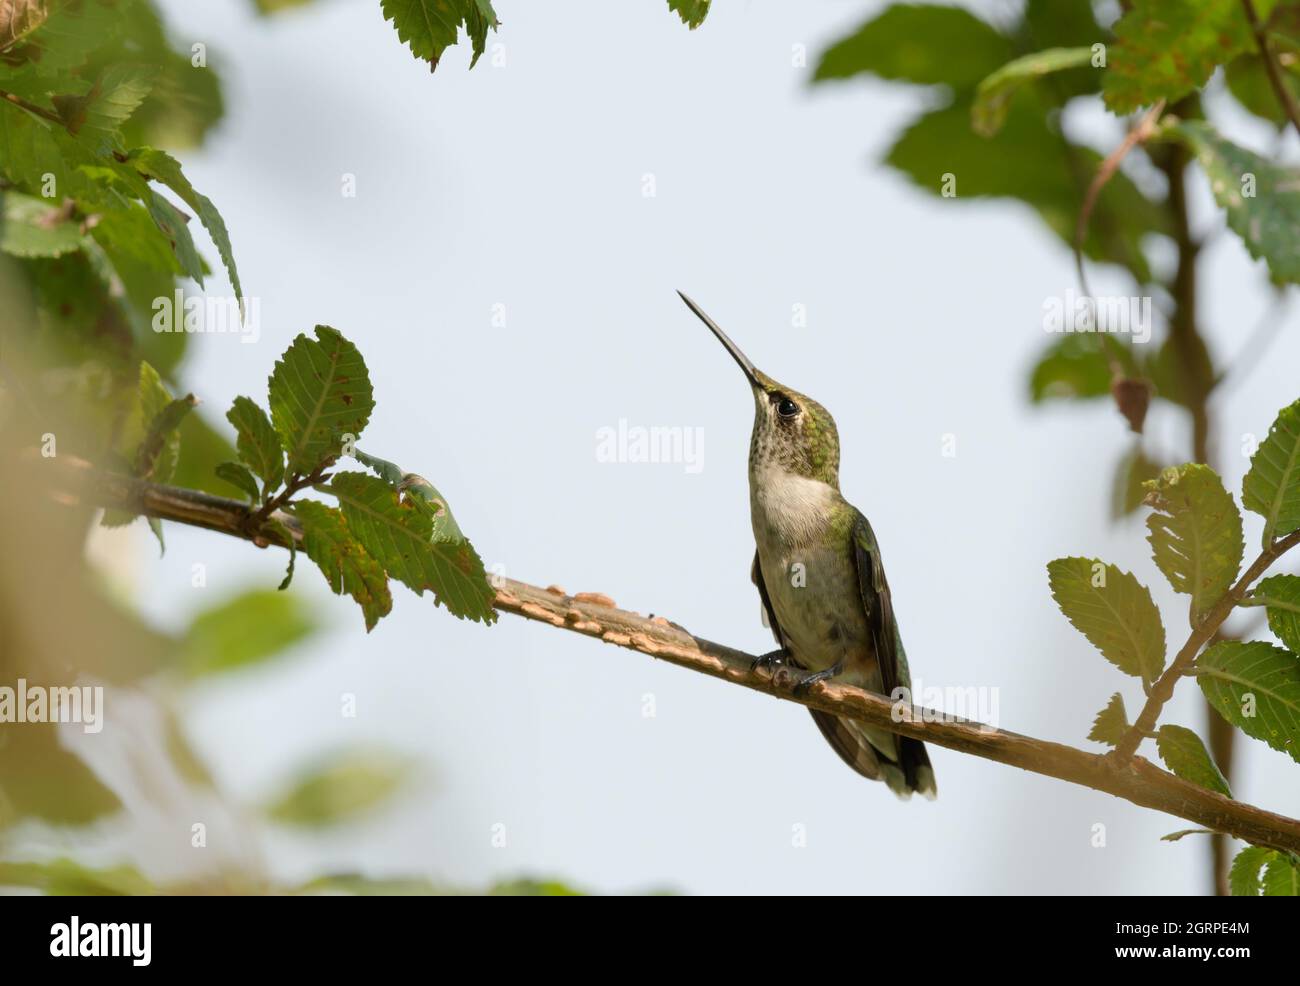 Der junge, rubinkehlige Kolibri thronte auf einem von Blättern umgebenen Ulmenzweig und schaute nach oben Stockfoto